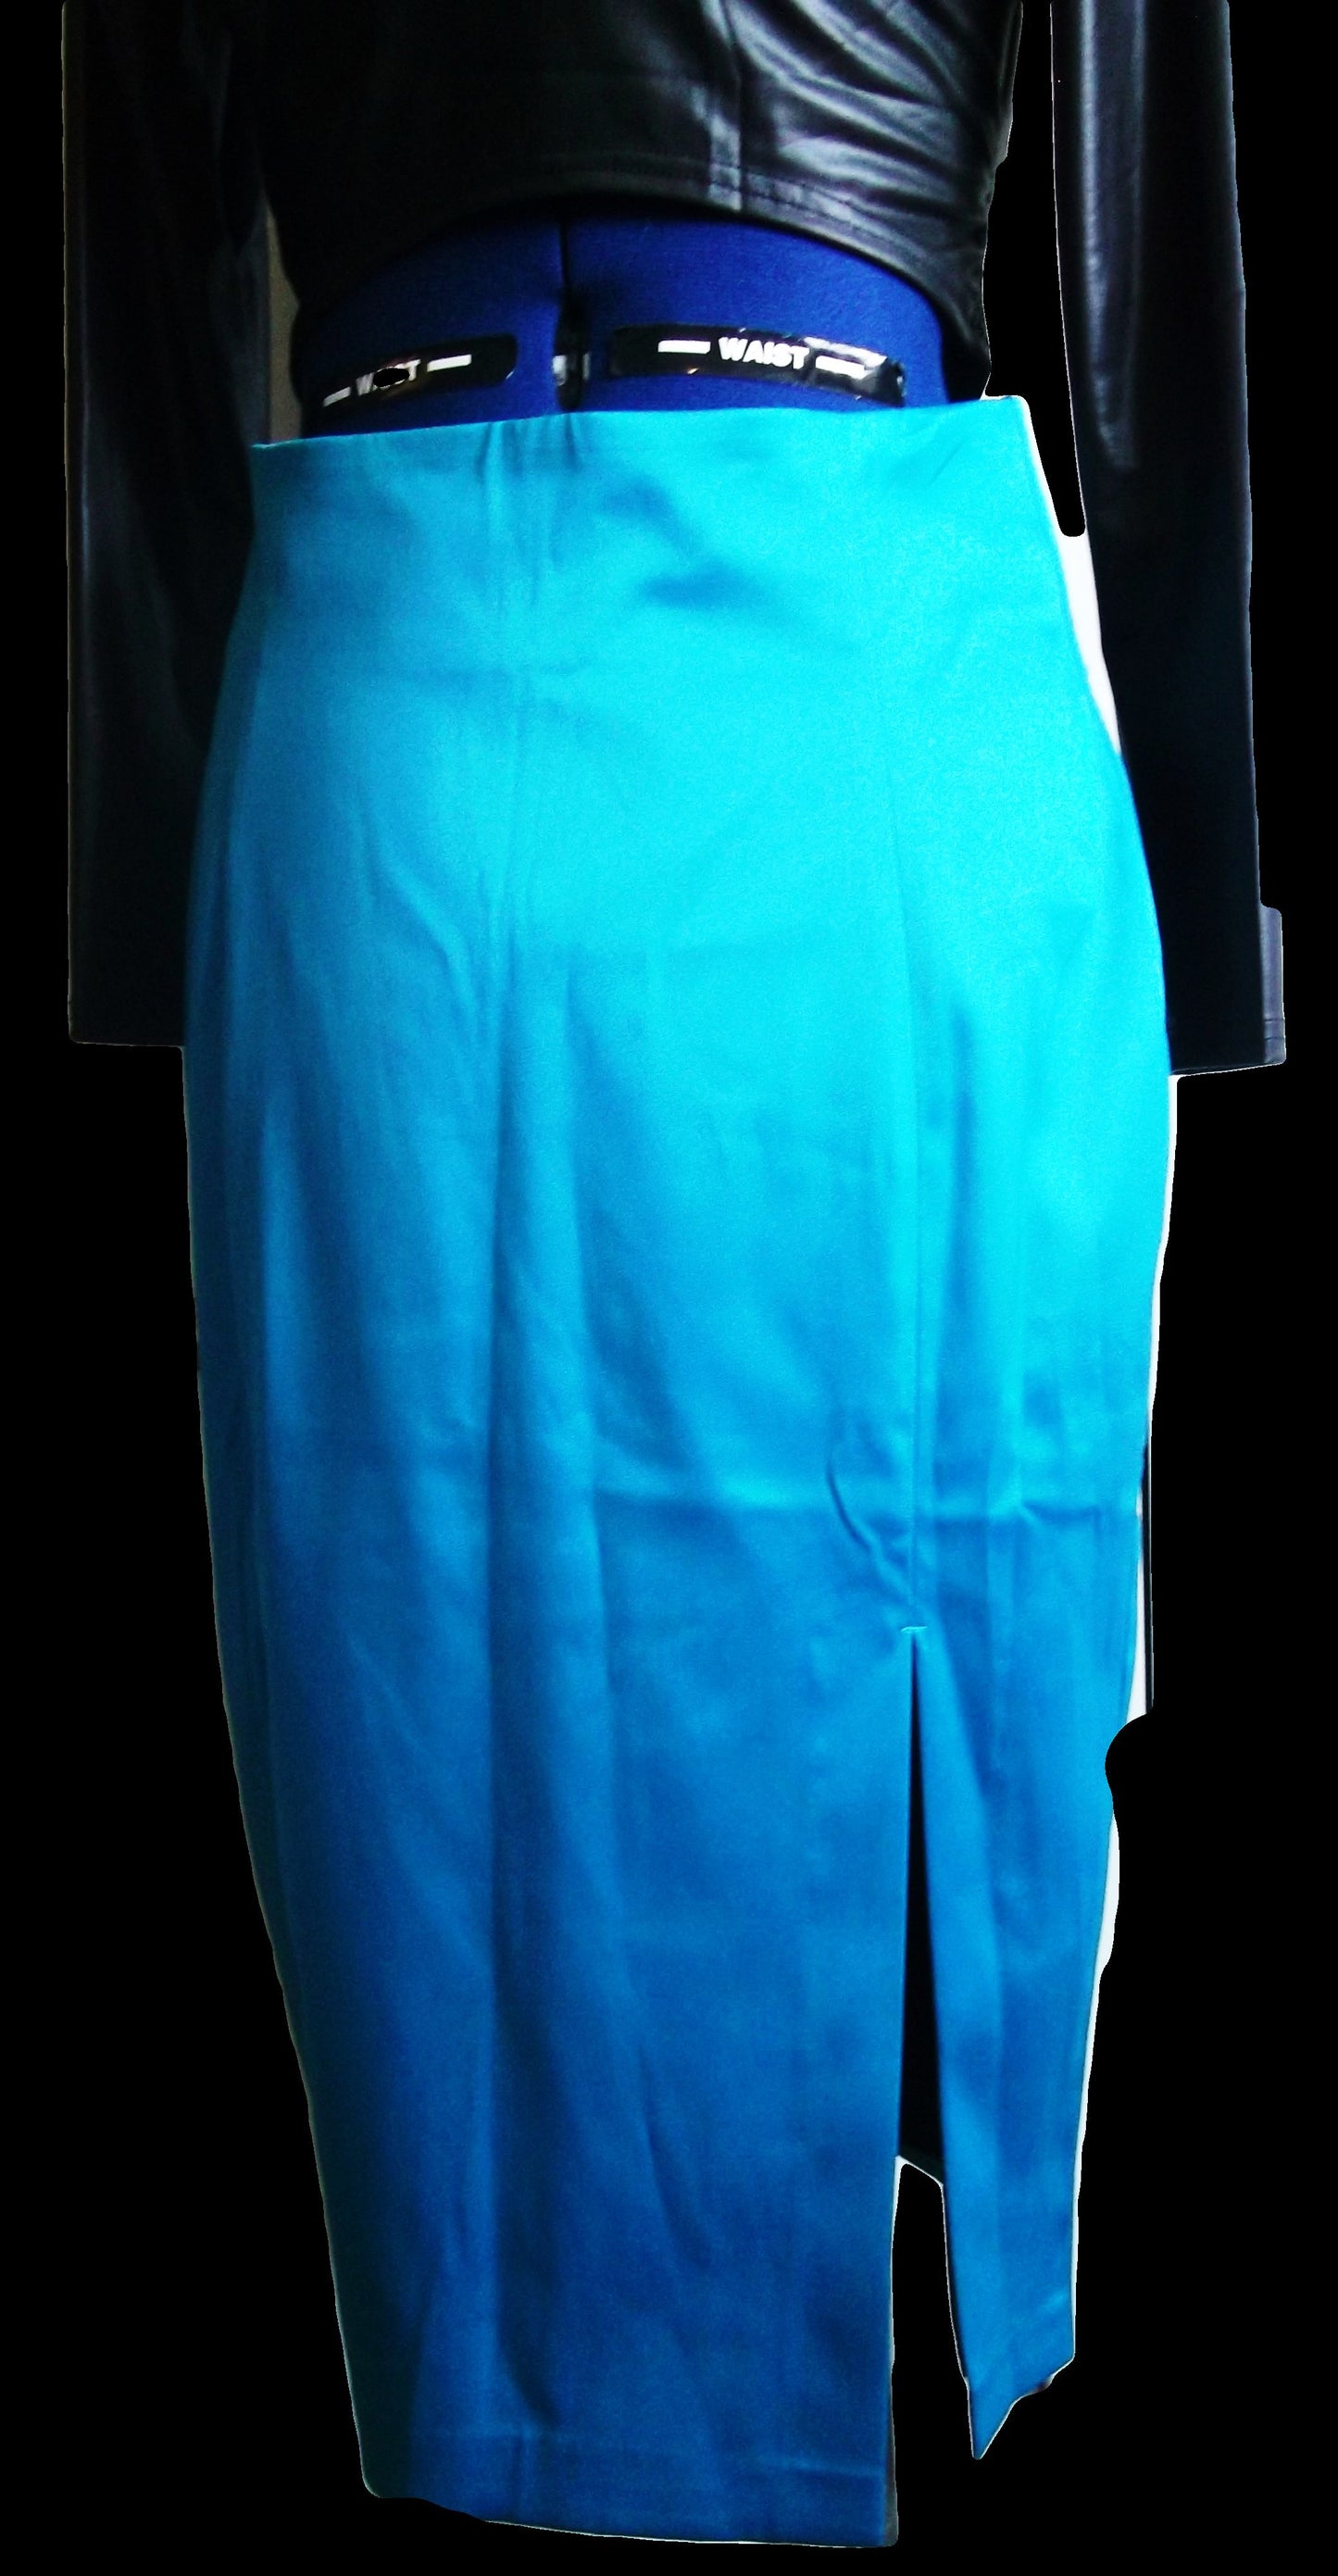 PUNK/goth/BOHO/VINTAGE turquoise/teale satin, calf length pencil skirt.size12. Wonkey Donkey Bazaar